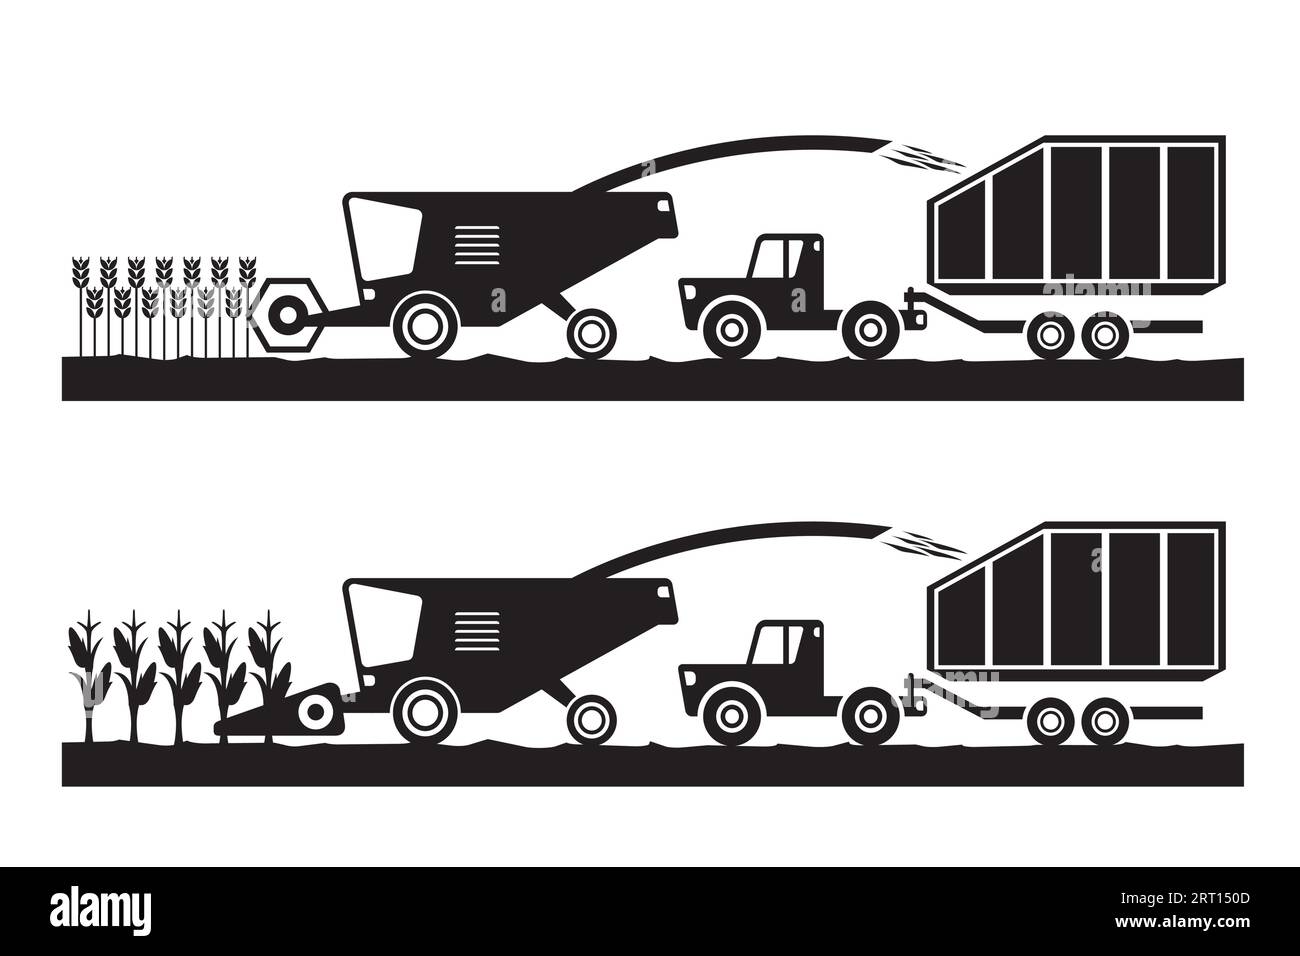 Mähdrescher und Traktor auf Weizen- und Maisfeldern – Vektorillustration Stock Vektor